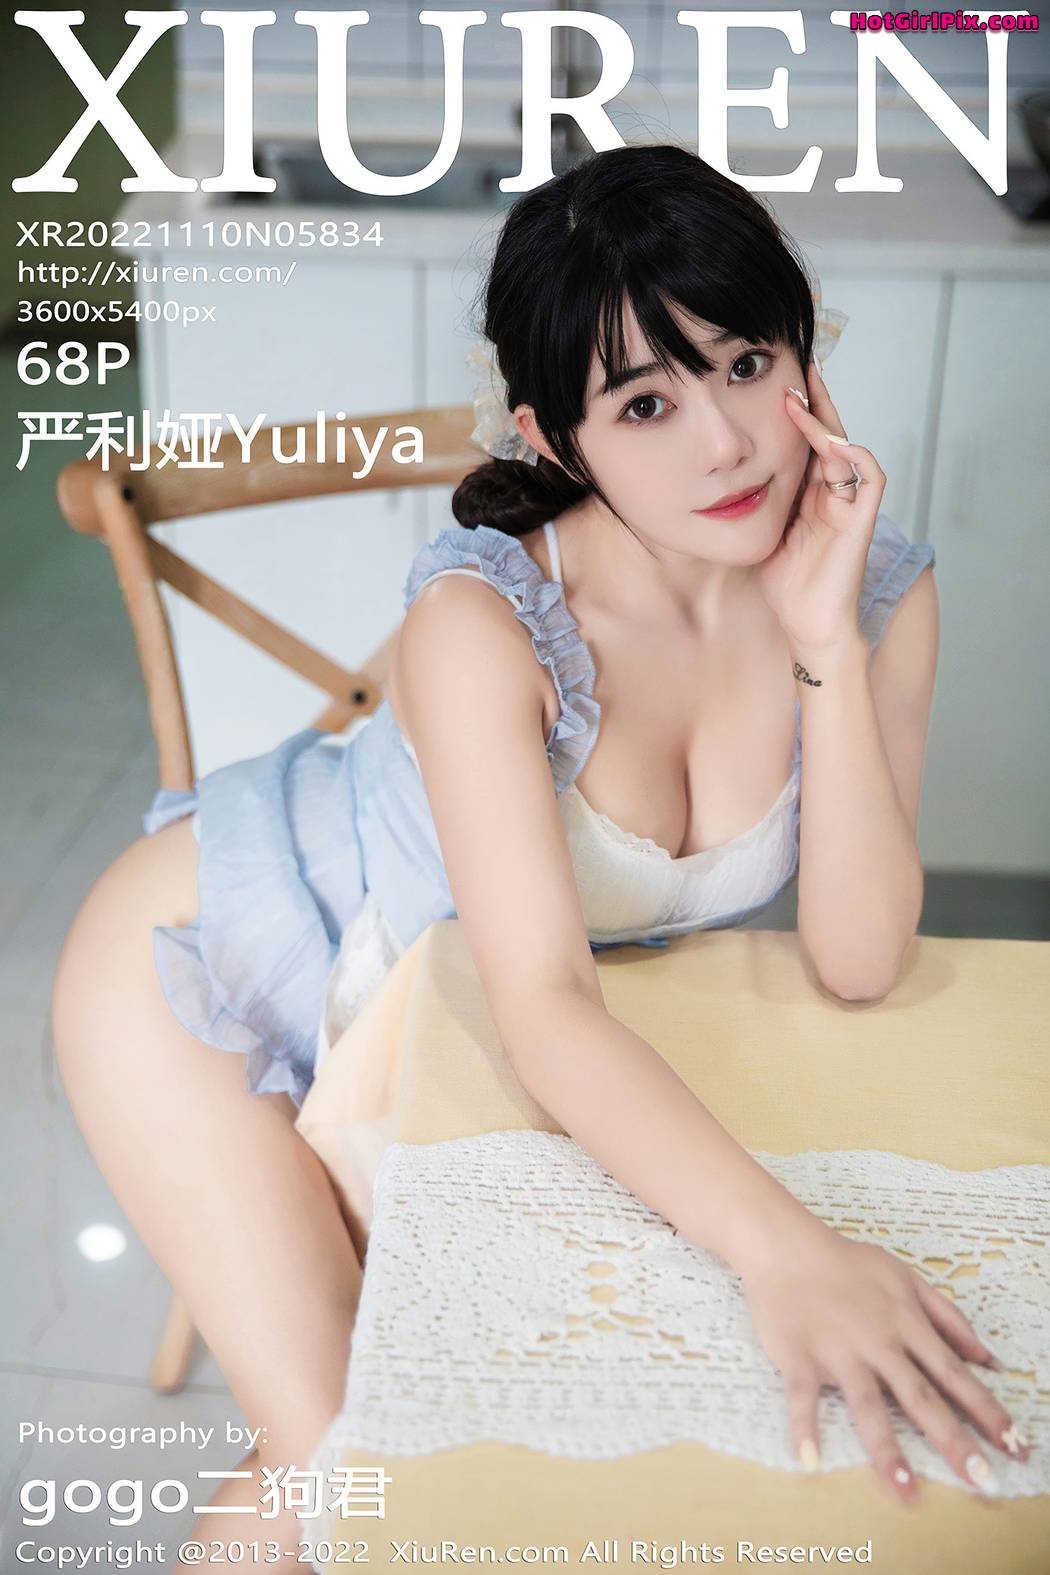 [XIUREN] No.5834 严利娅Yuliya Cover Photo